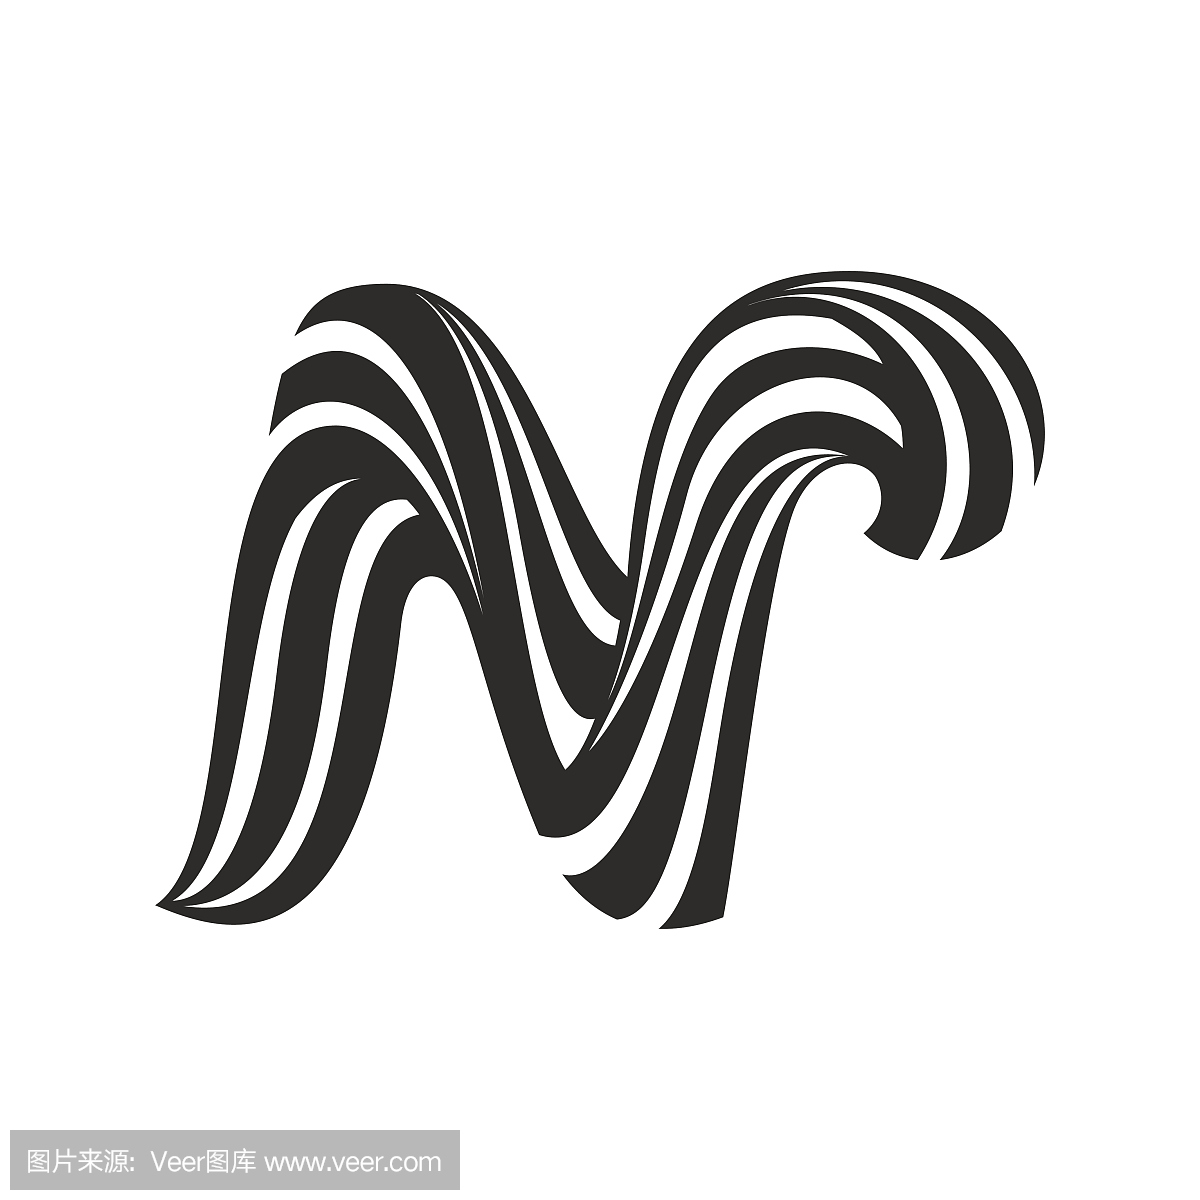 由扭曲线形成的N字母图标。